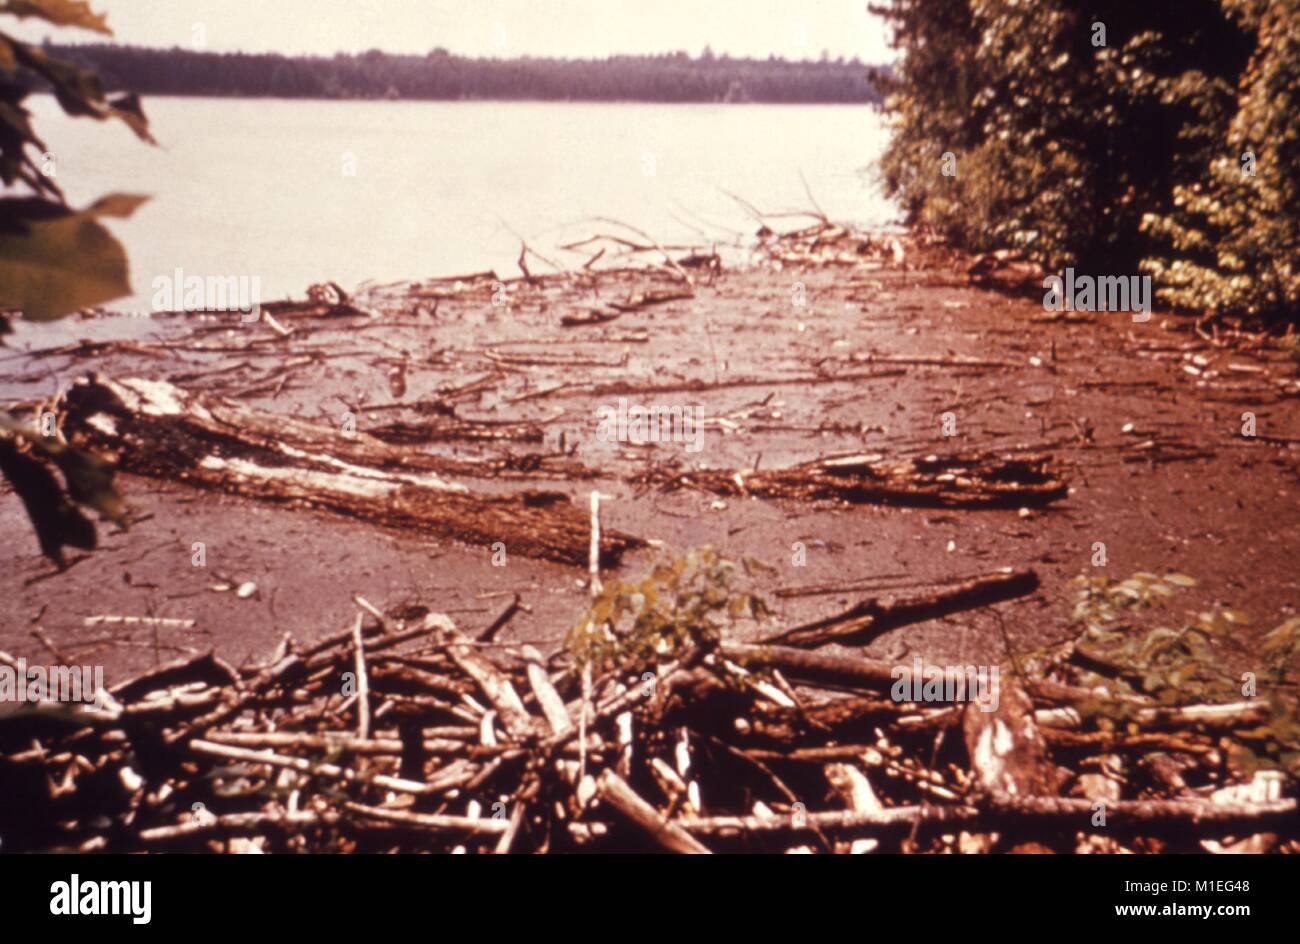 Fotografia paesaggio di tronchi e detriti sul bordo di un lago di serbatoio con costa boscosa visibile in background, preso come parte di un procedimento di indagine nel vettore di malattie, Stati Uniti, 1976, 1976. Immagine cortesia CDC. () Foto Stock